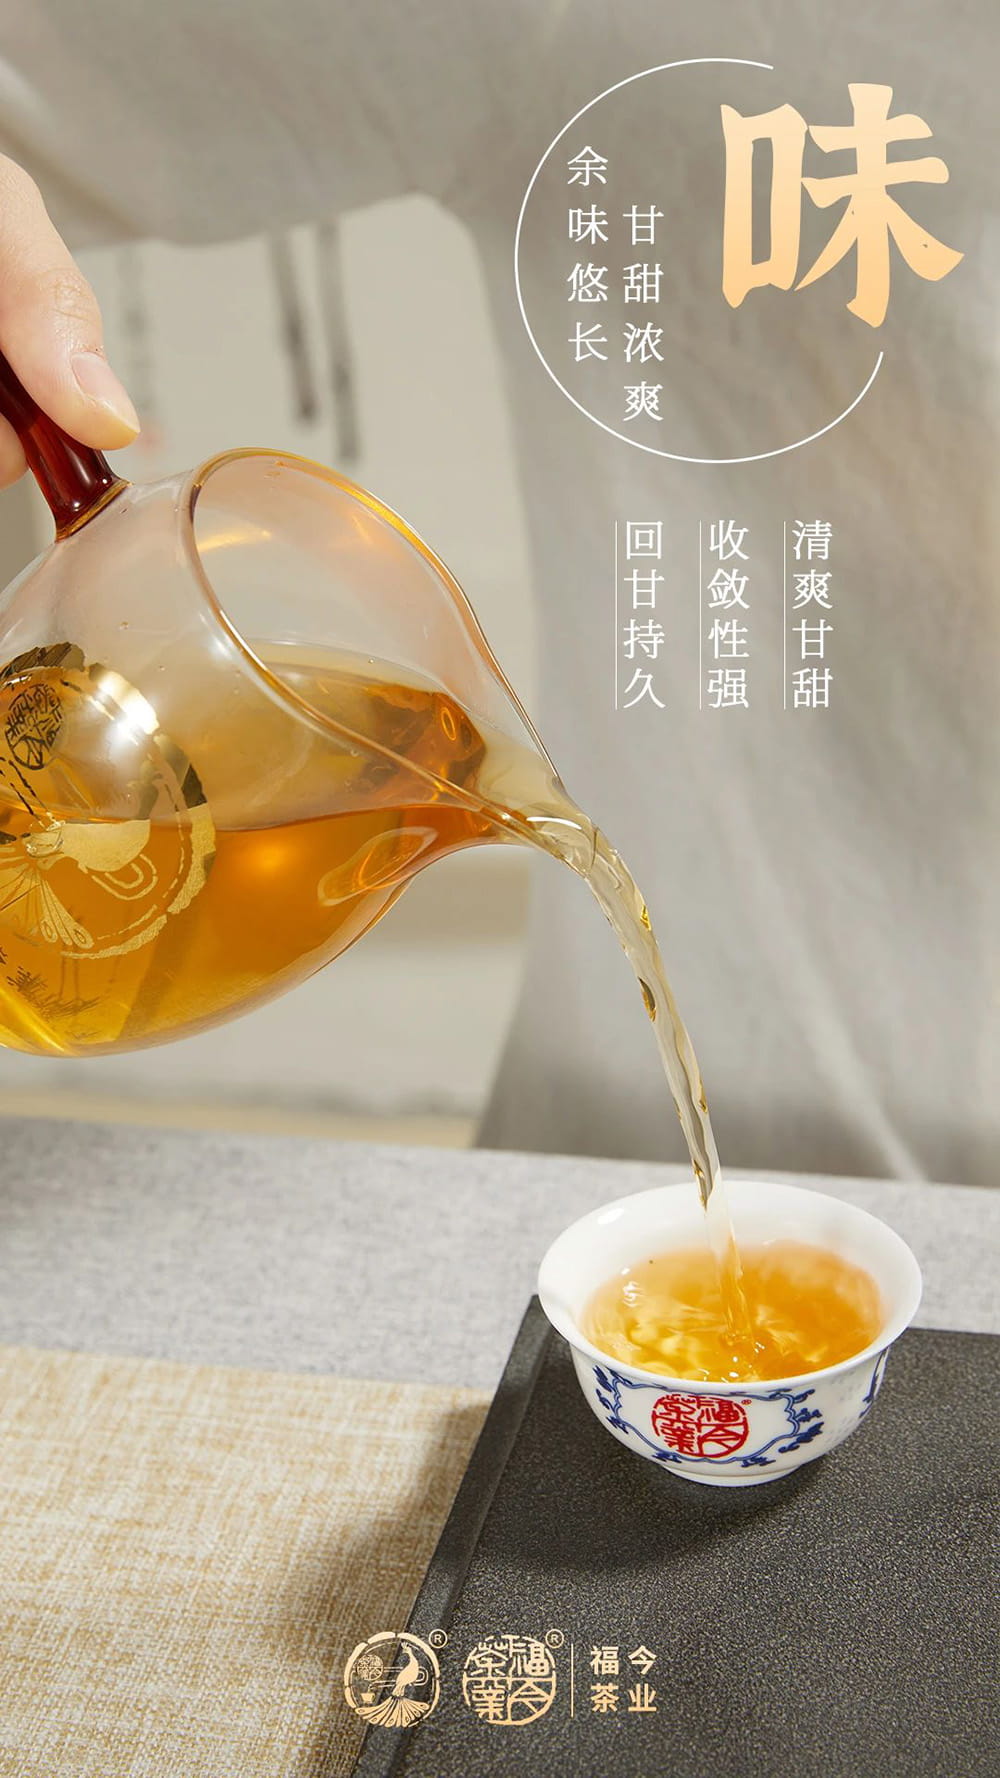 布朗系列丨福今茶业2020年『布朗珍藏青砖』即将正式发售！